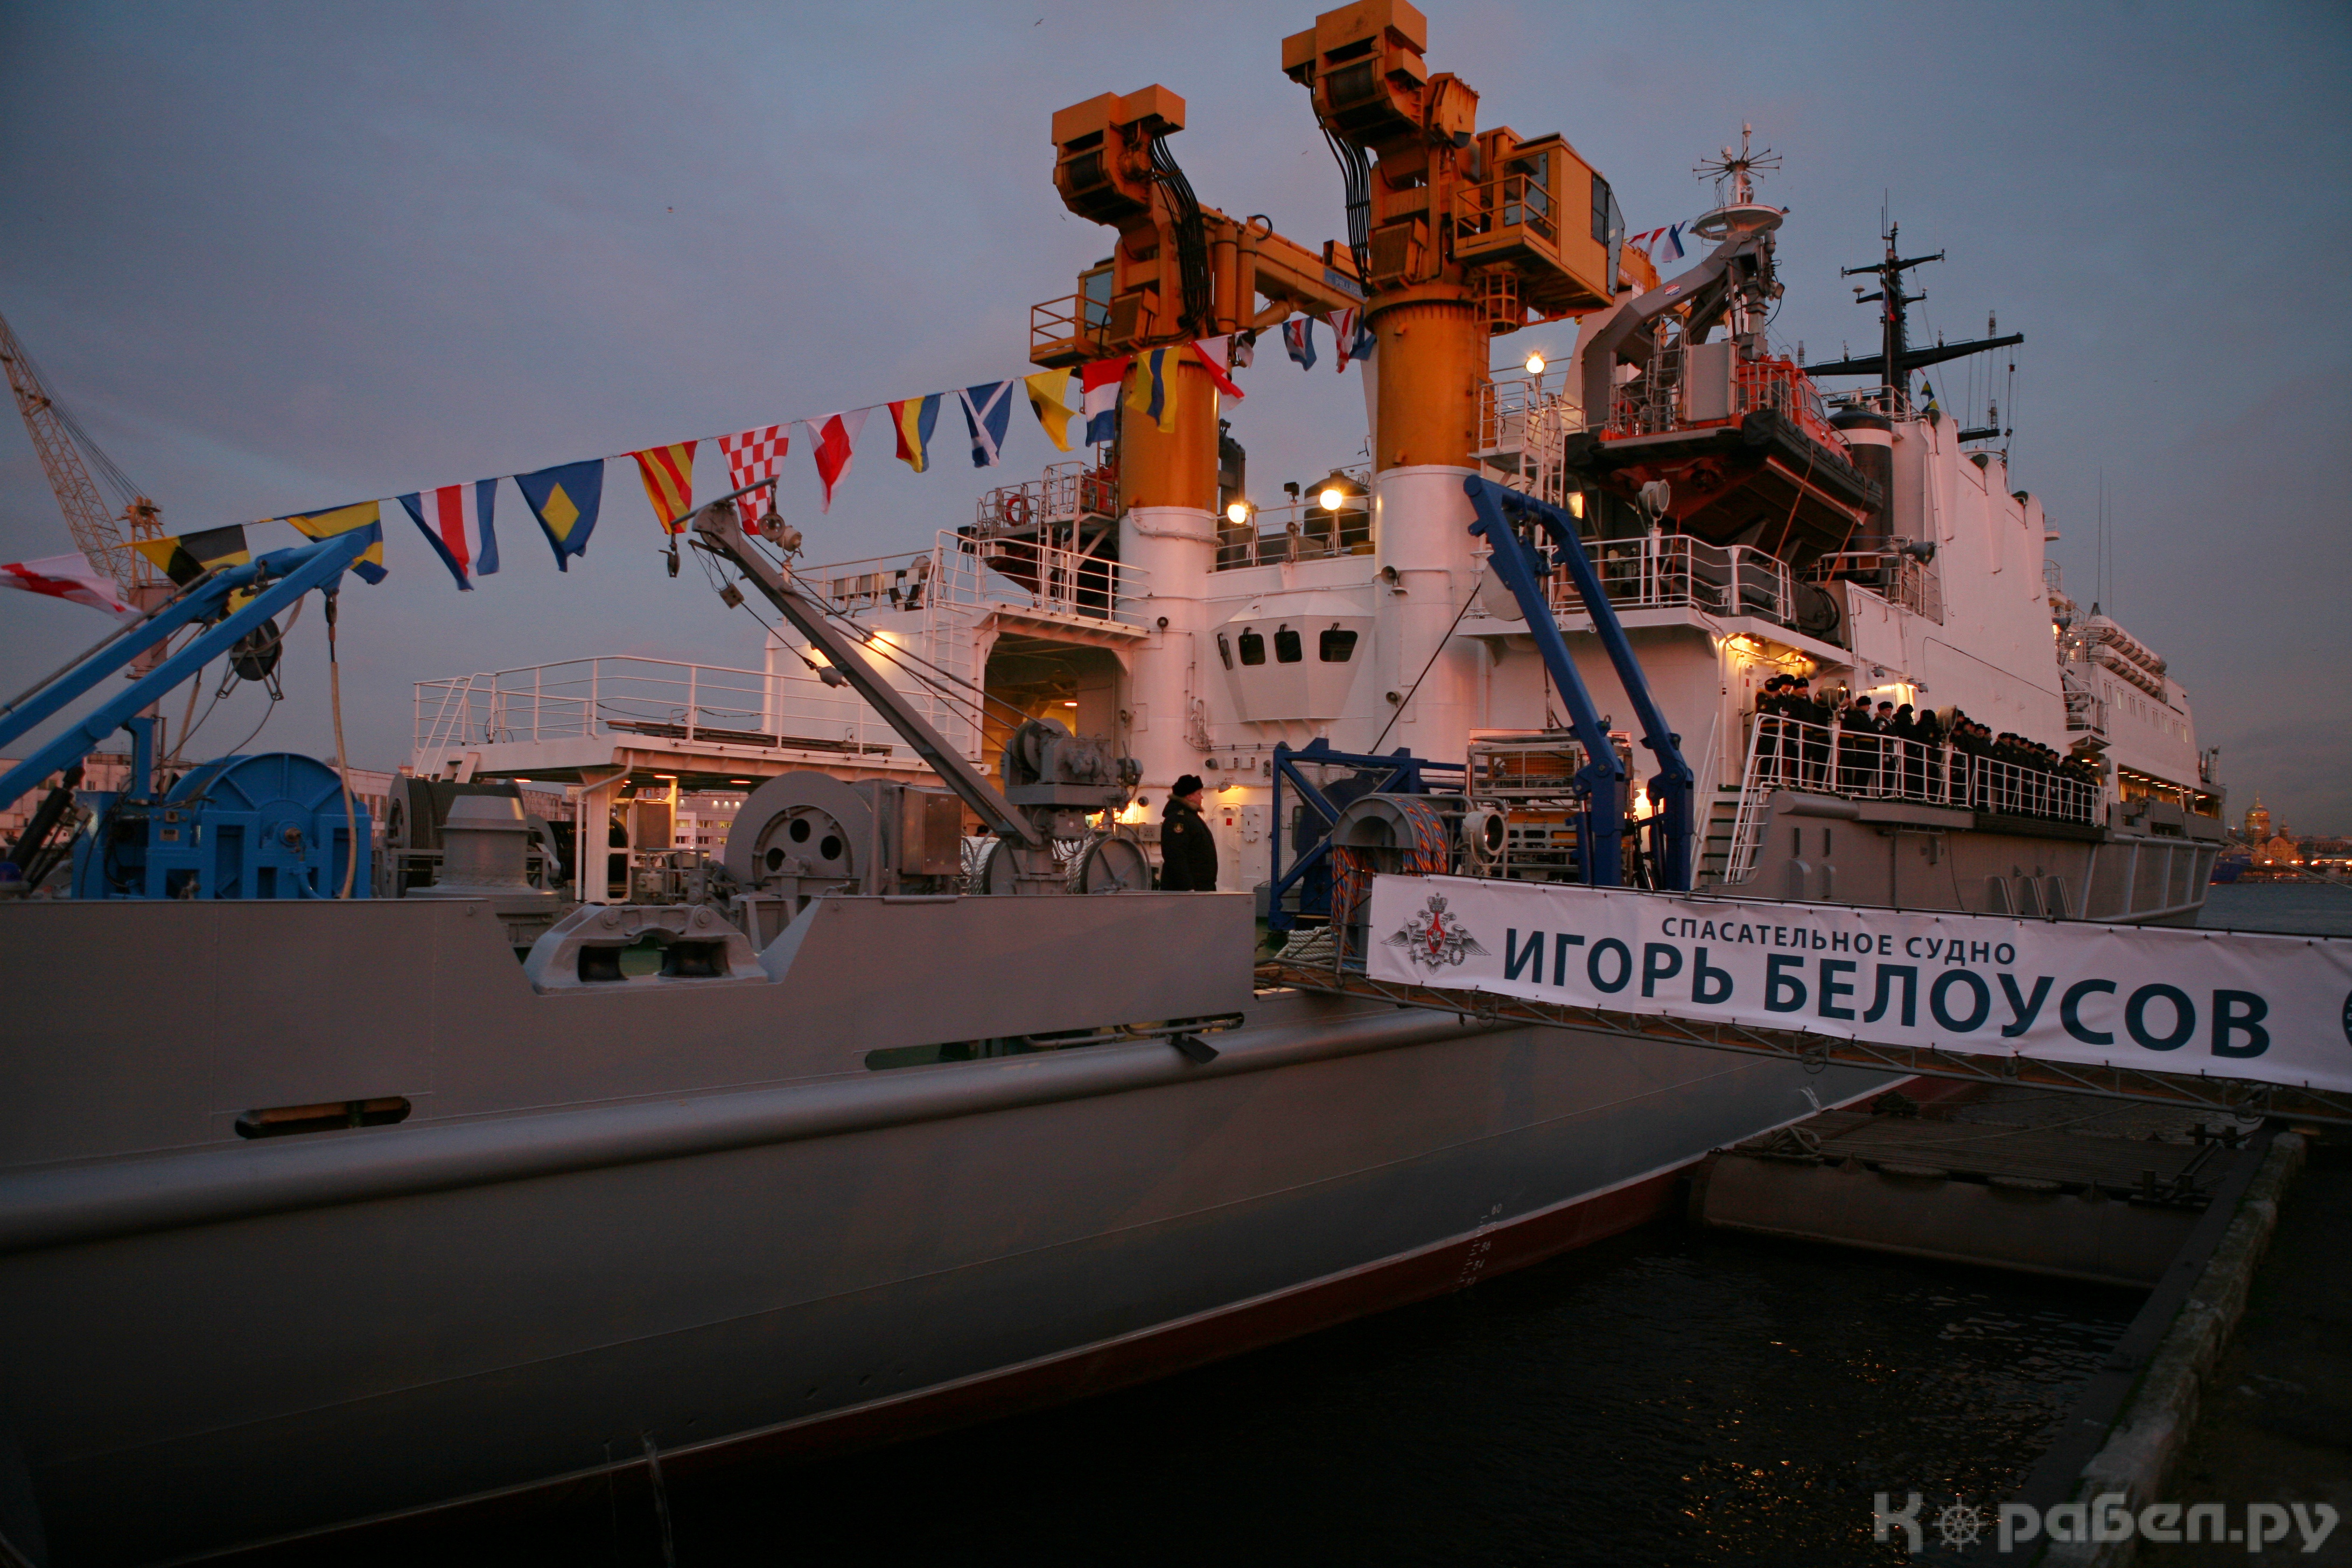 Церемония поднятия флага на спасательном судне "Игорь Белоусов"